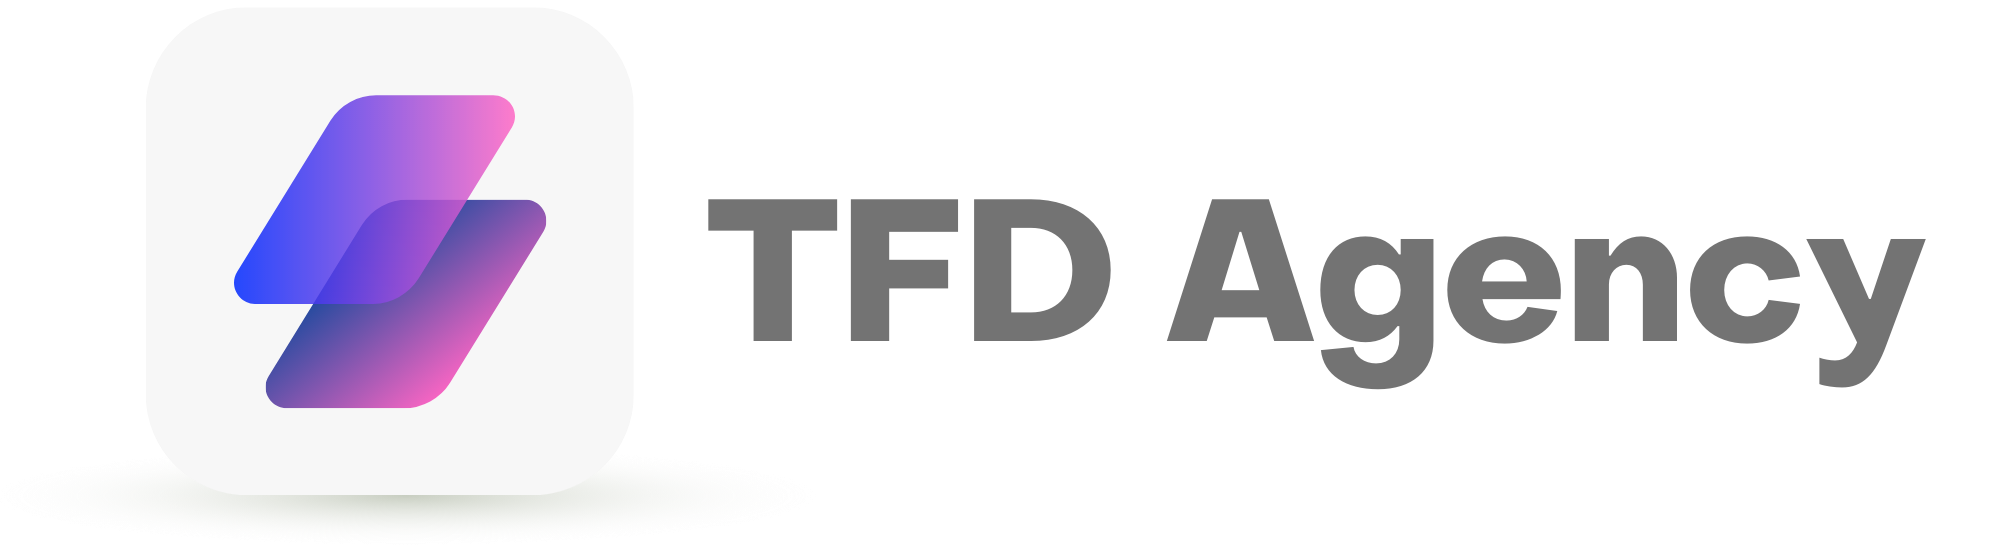 TFD Agency